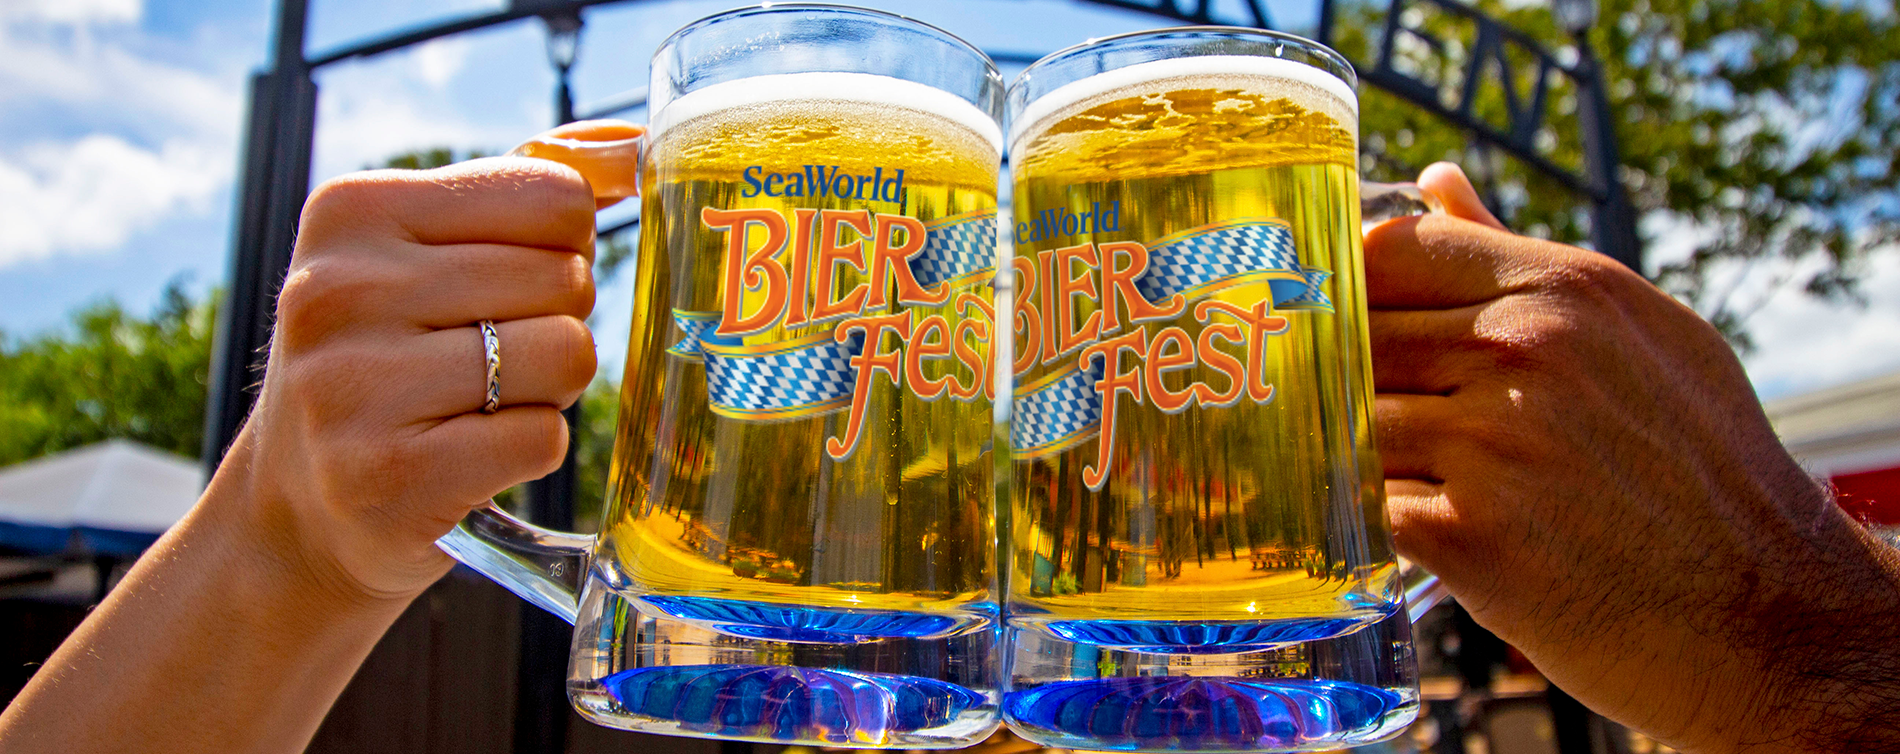 Bier Fest At SeaWorld San Antonio